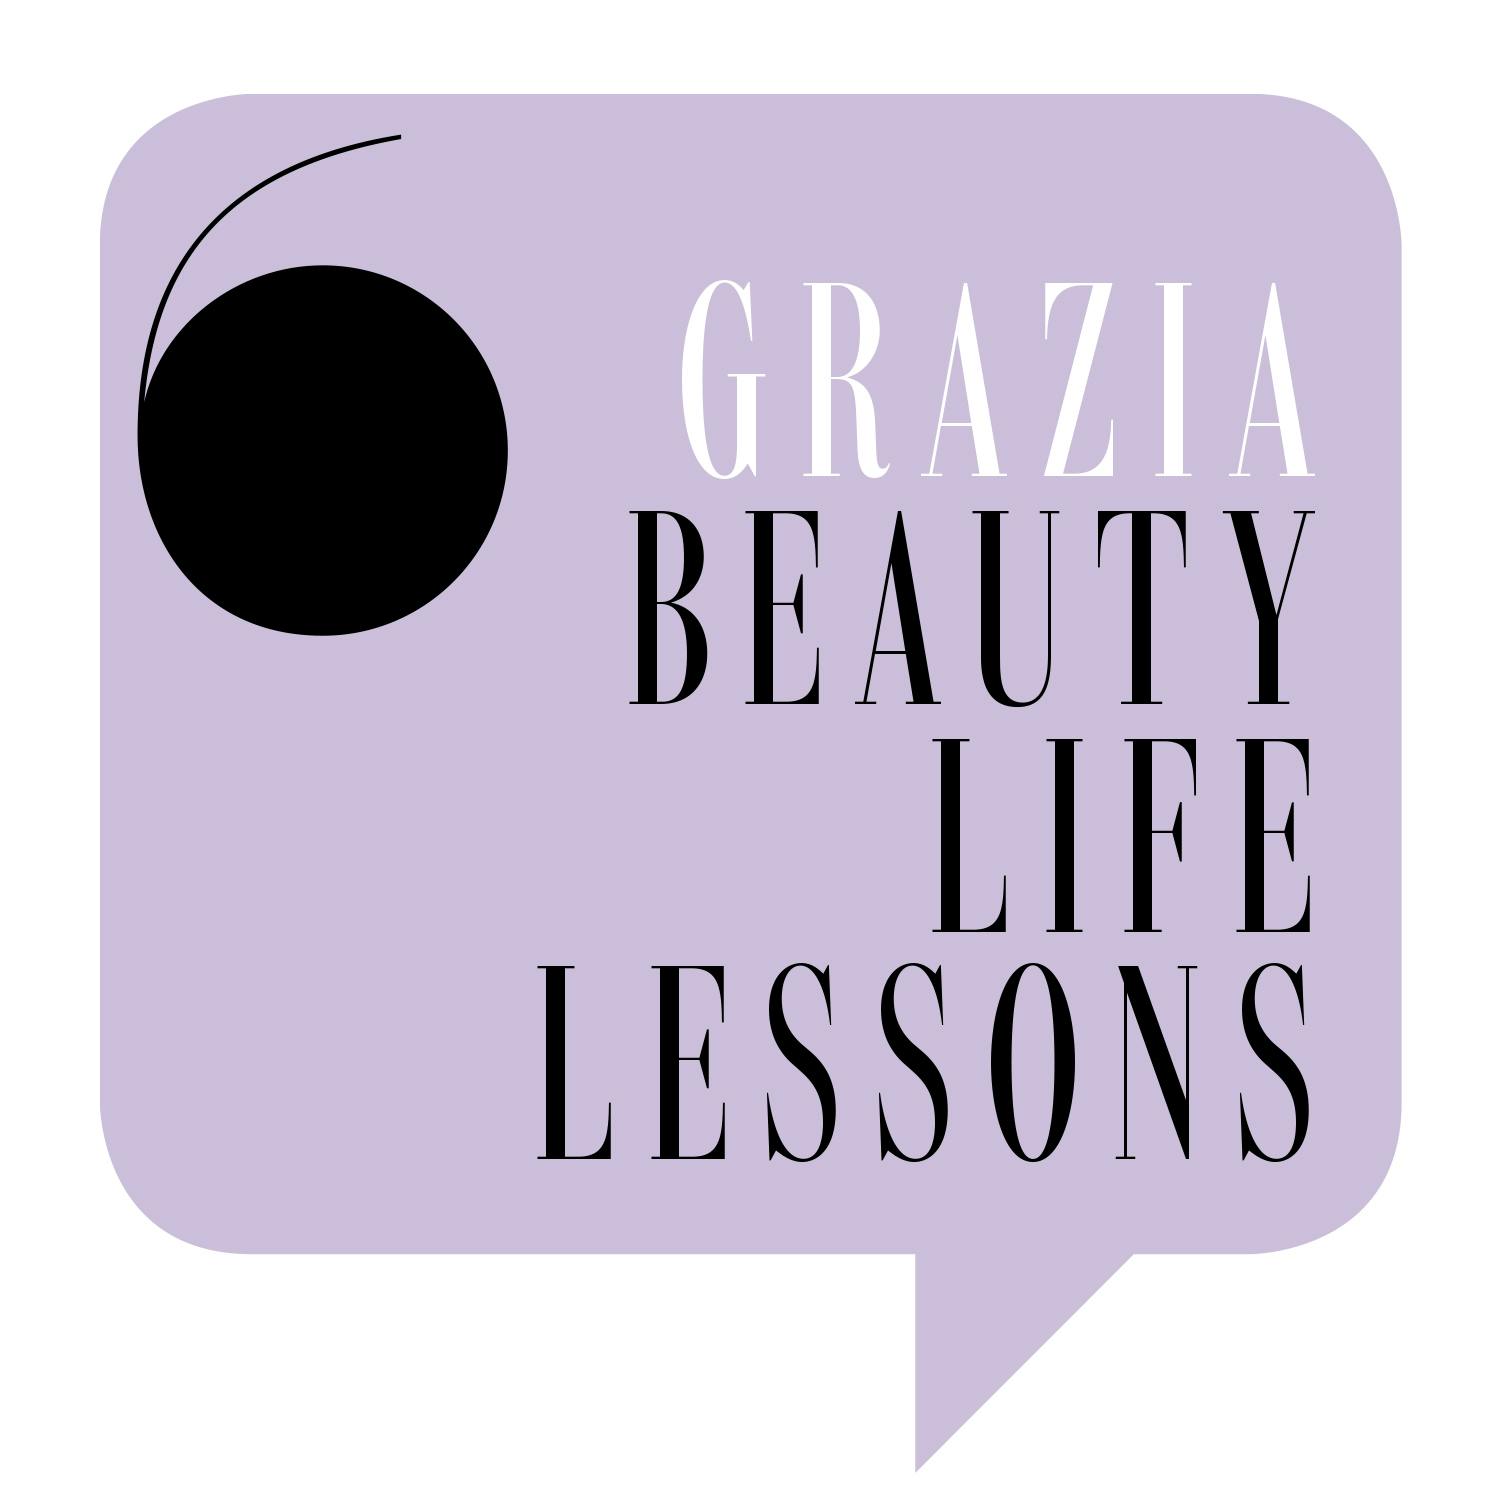 Grazia Beauty Life Lessons - a new Grazia podcast!